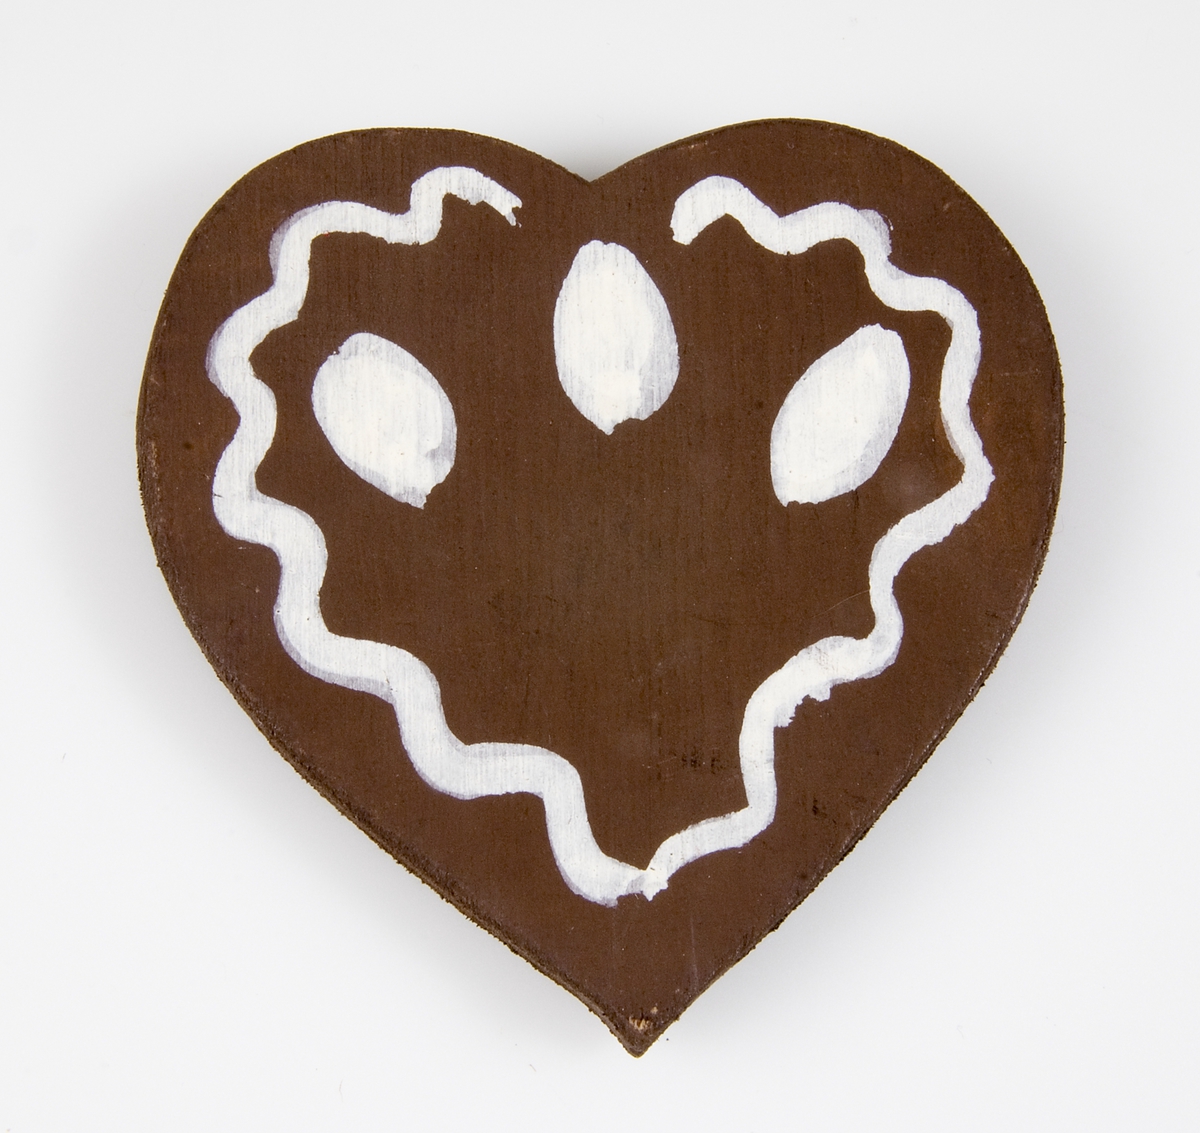 Julgransprydnad i form av ett pepparkakshjärta av brunmålat trä med vitmålade detaljer.
